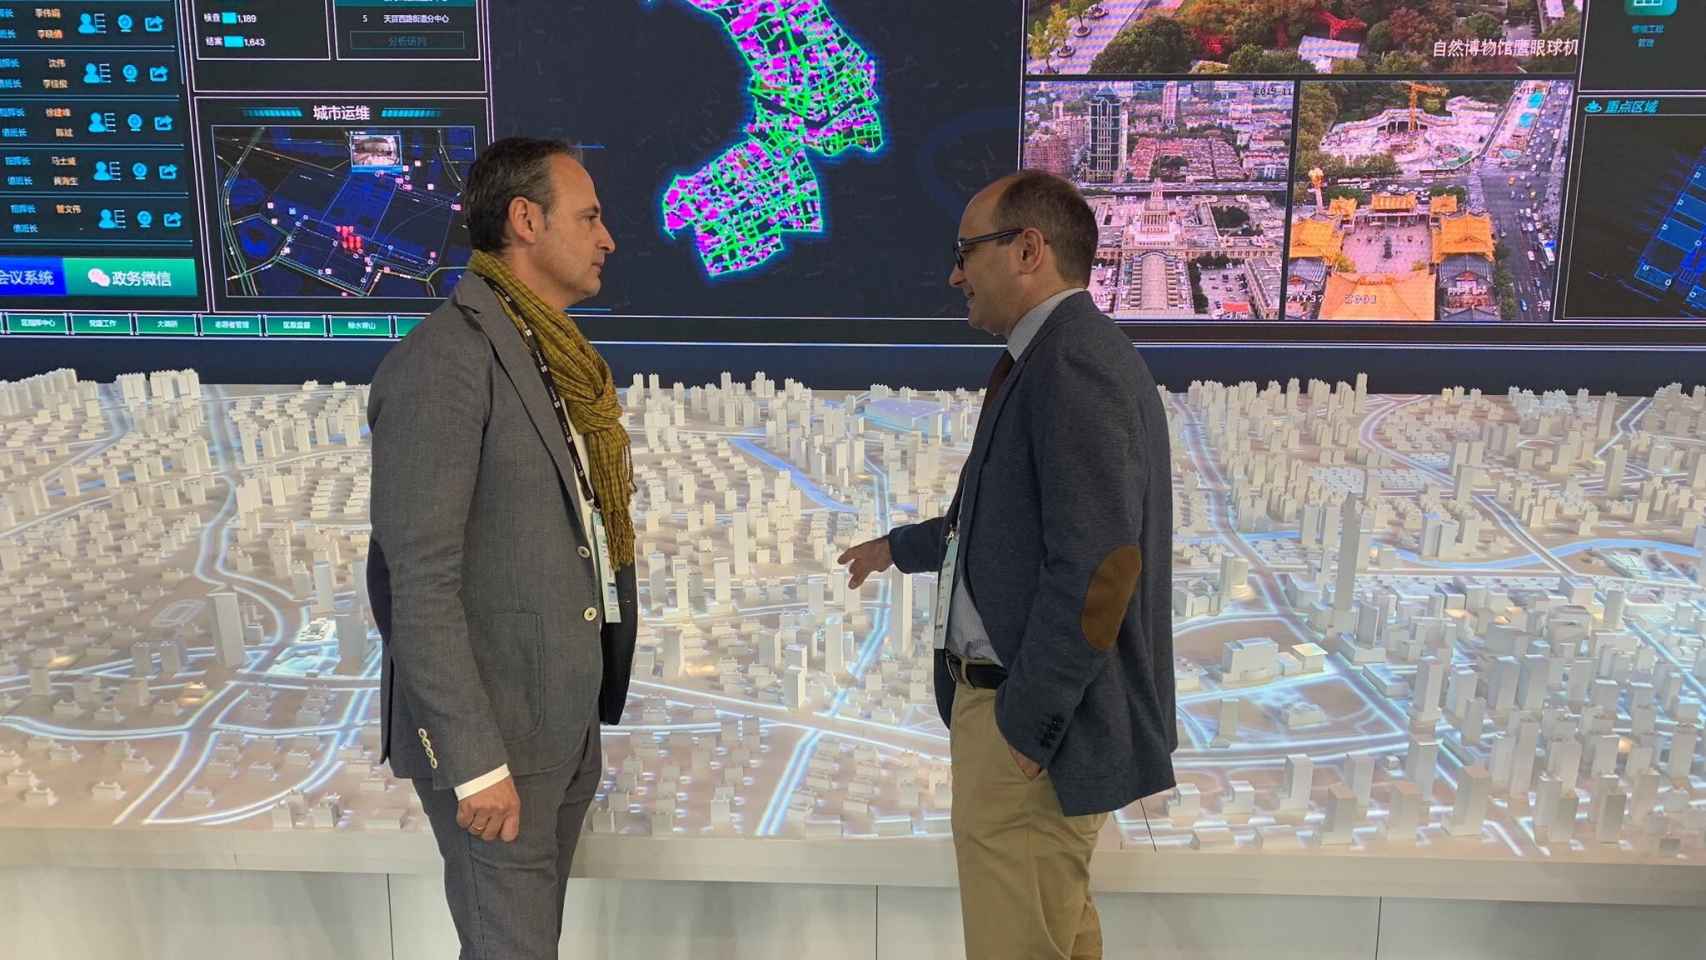 El consejero de Presidencia y Hacienda, Javier Celdrán, y el director general de Estrategia y Transformación Digital, Joaquín Gómez, durante una visita a un centro de tecnologías avanzadas 'smart city'.